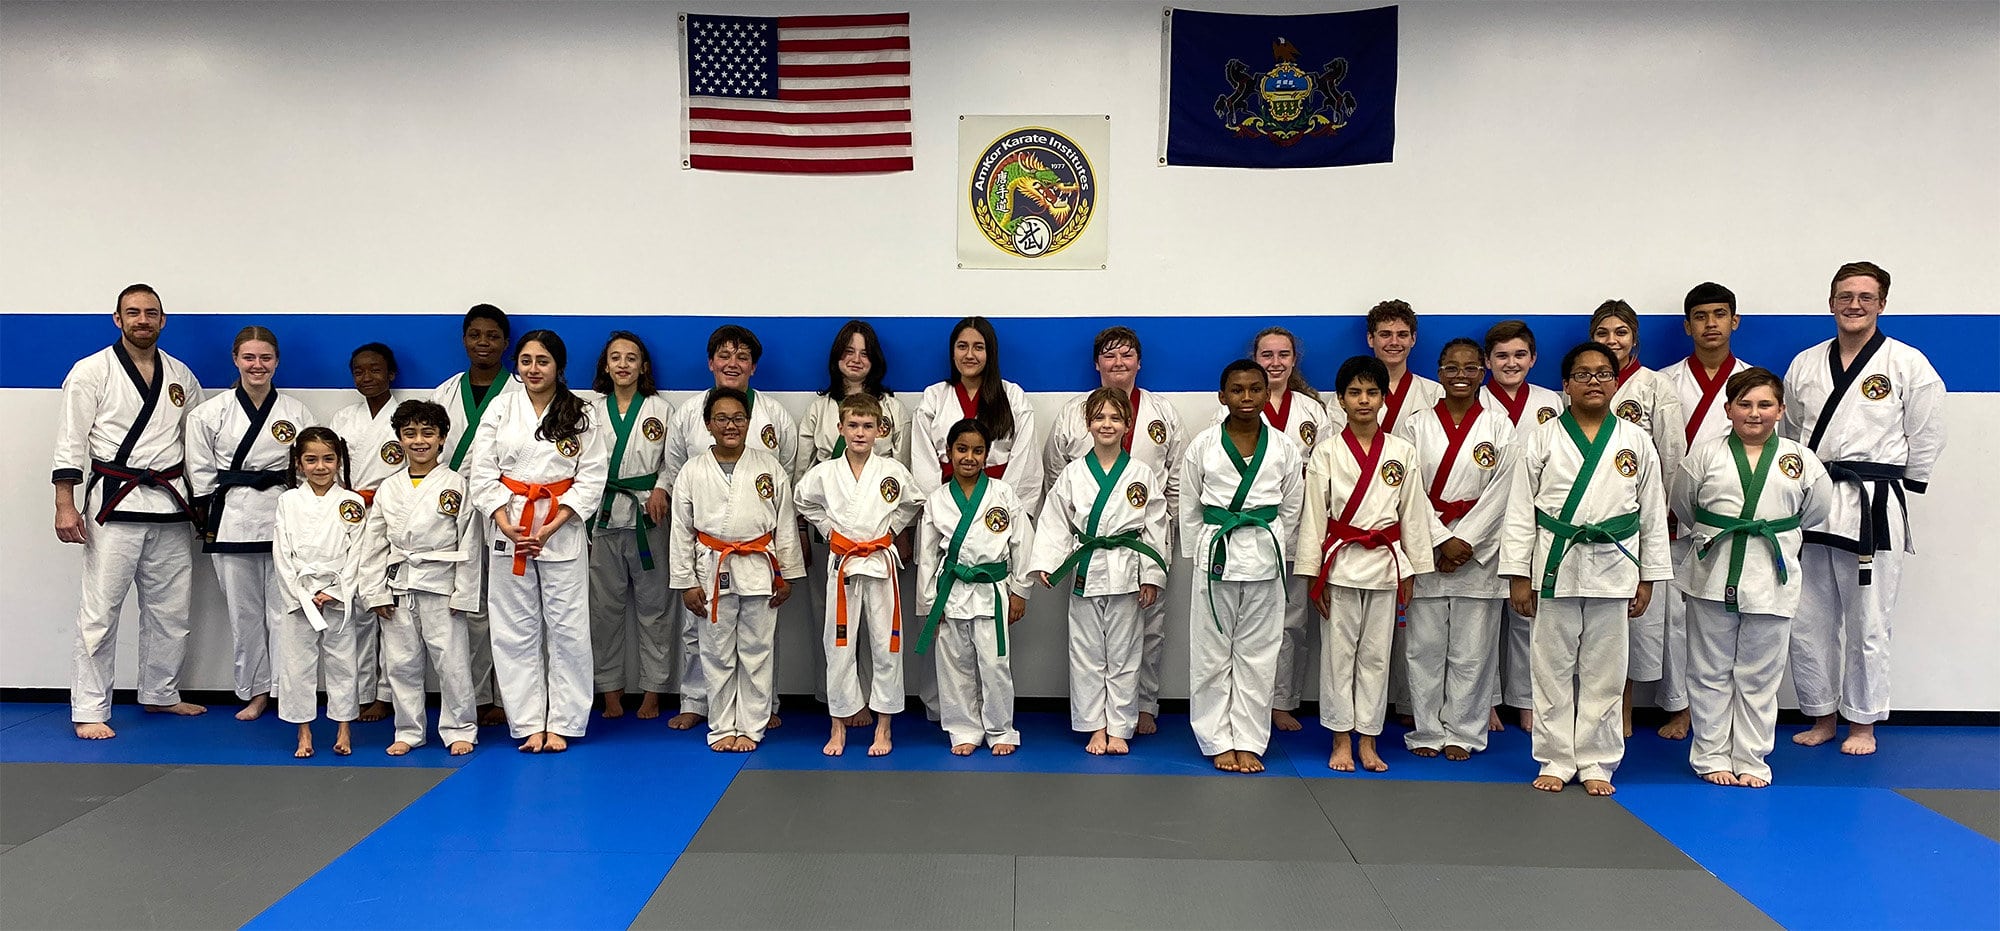 coatesville karate class group photo 2023